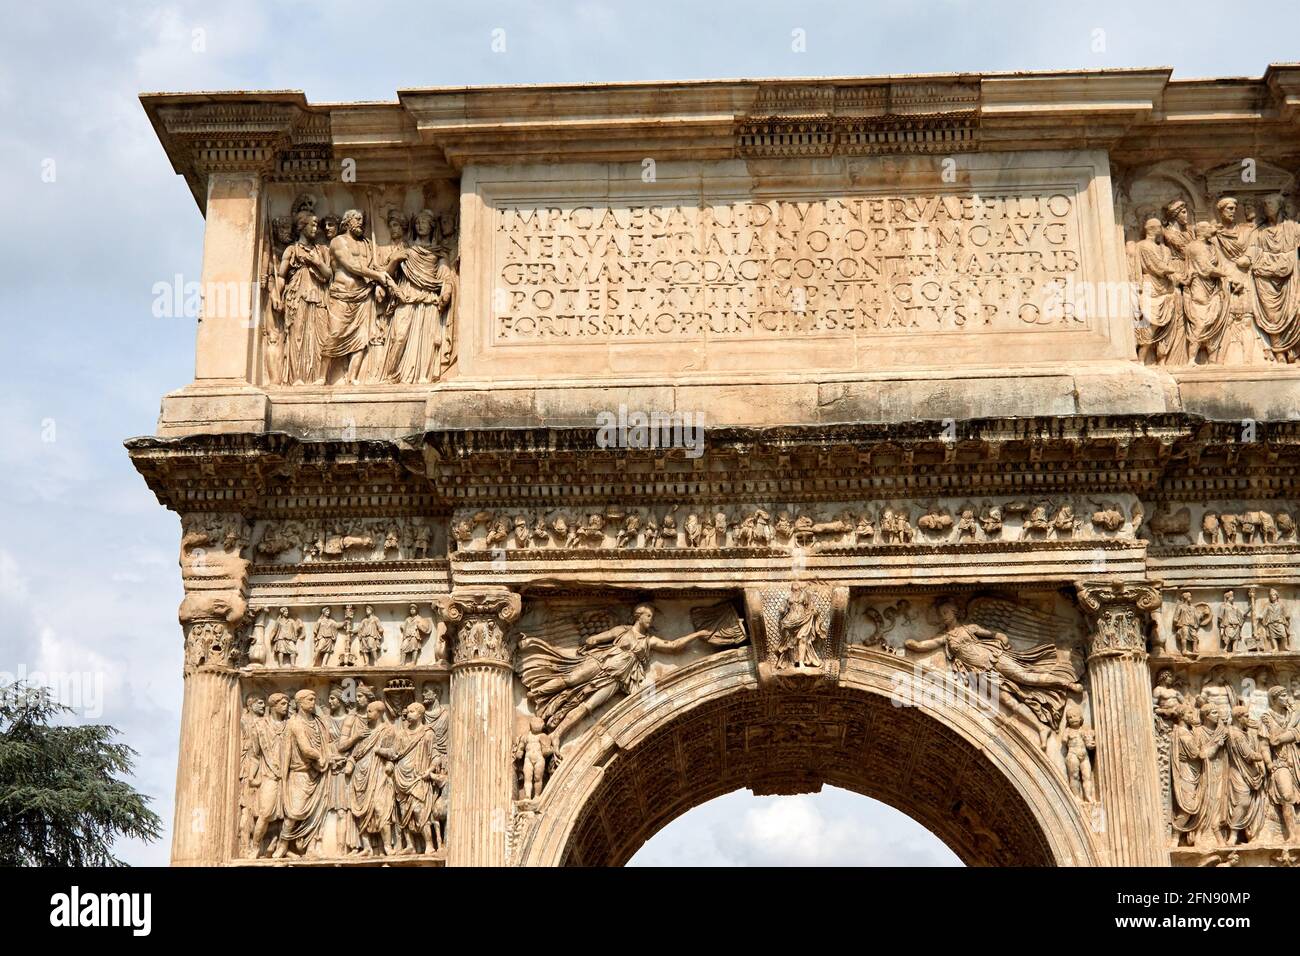 Arco di Traiano, Benevento, Italy Stock Photo